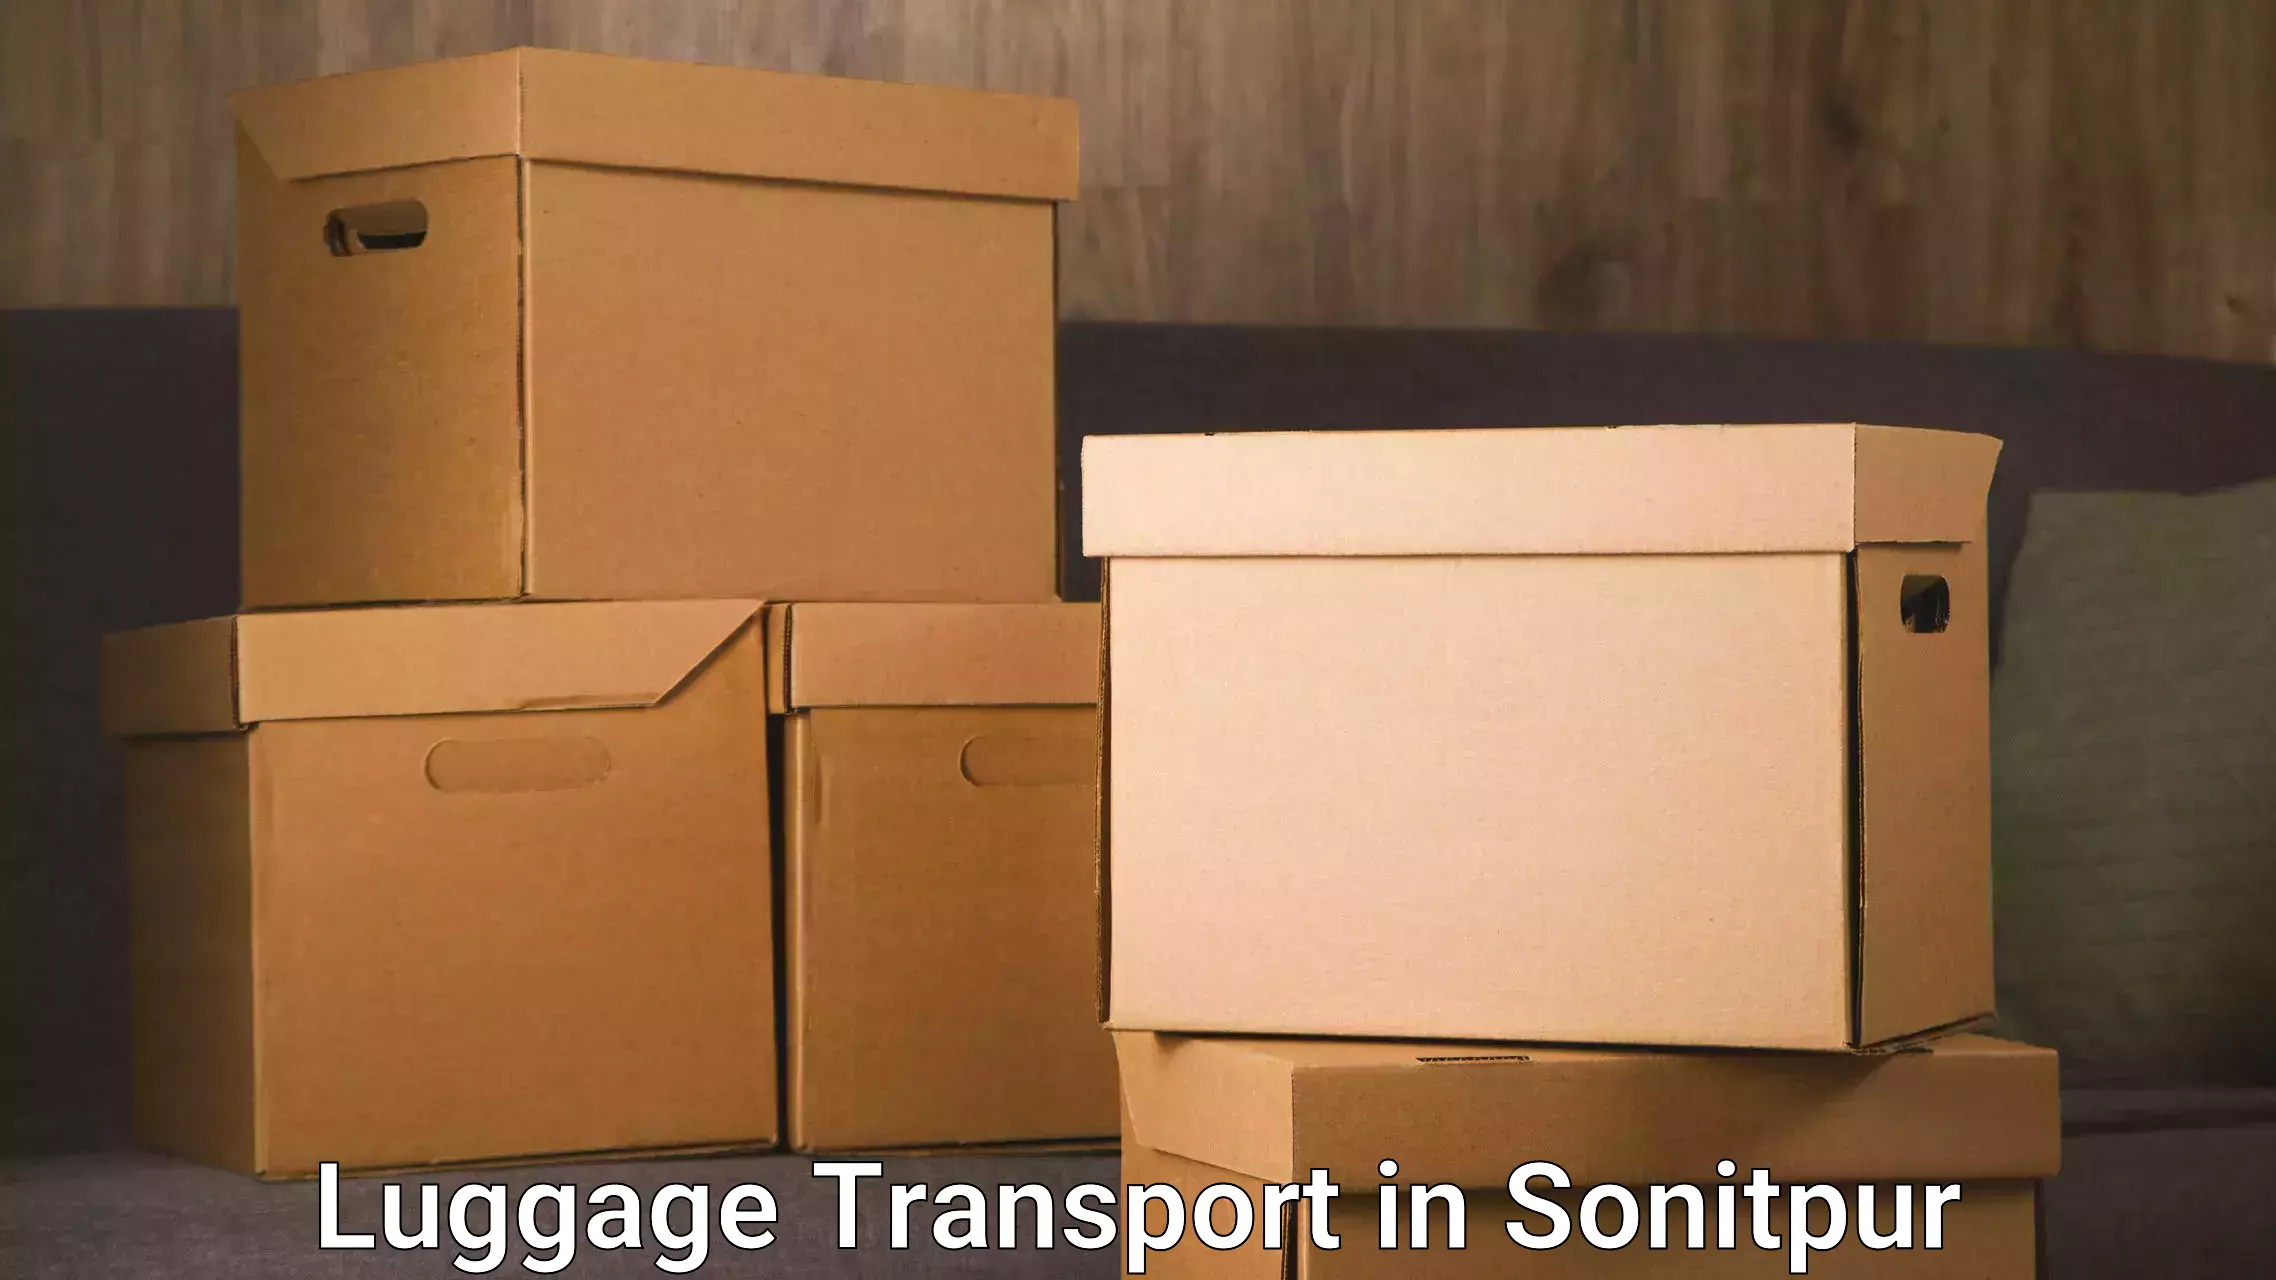 Corporate baggage transport in Sonitpur